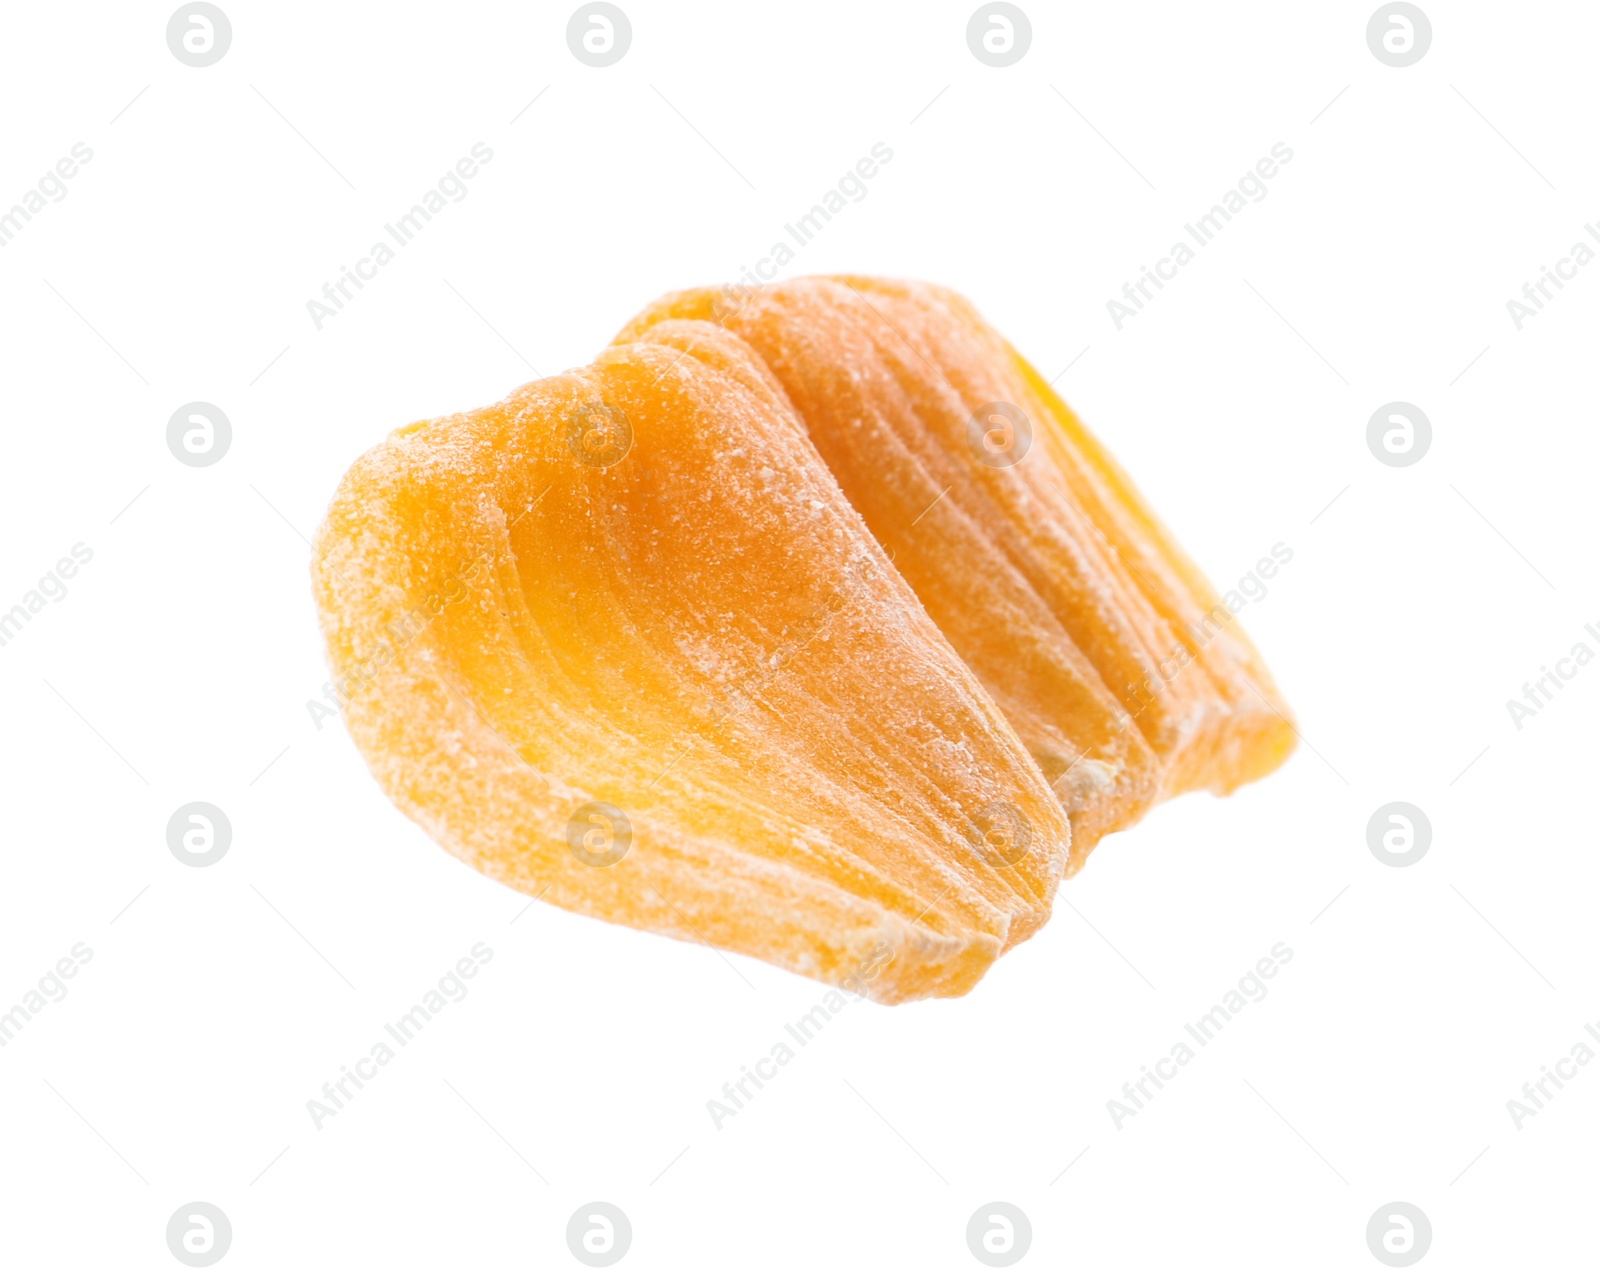 Photo of Sweet dried jackfruit slice isolated on white